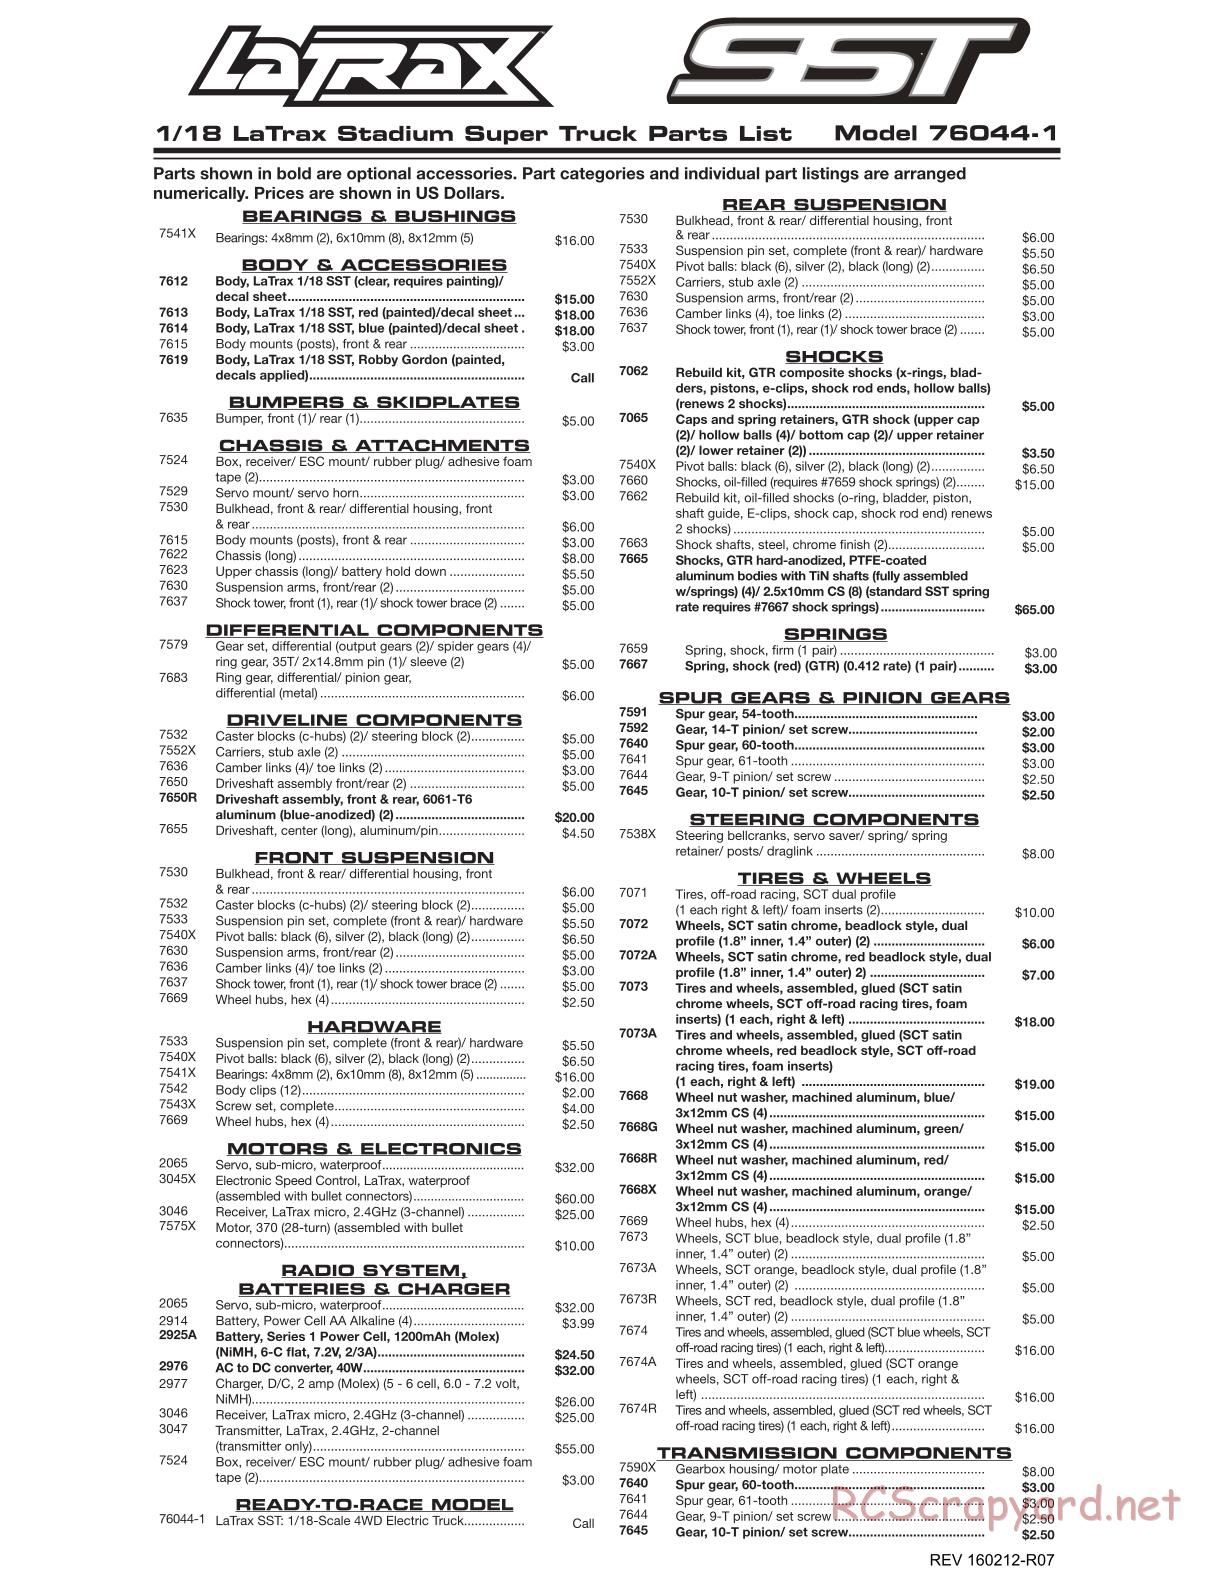 Traxxas - LaTrax SST (2014) - Parts List - Page 1